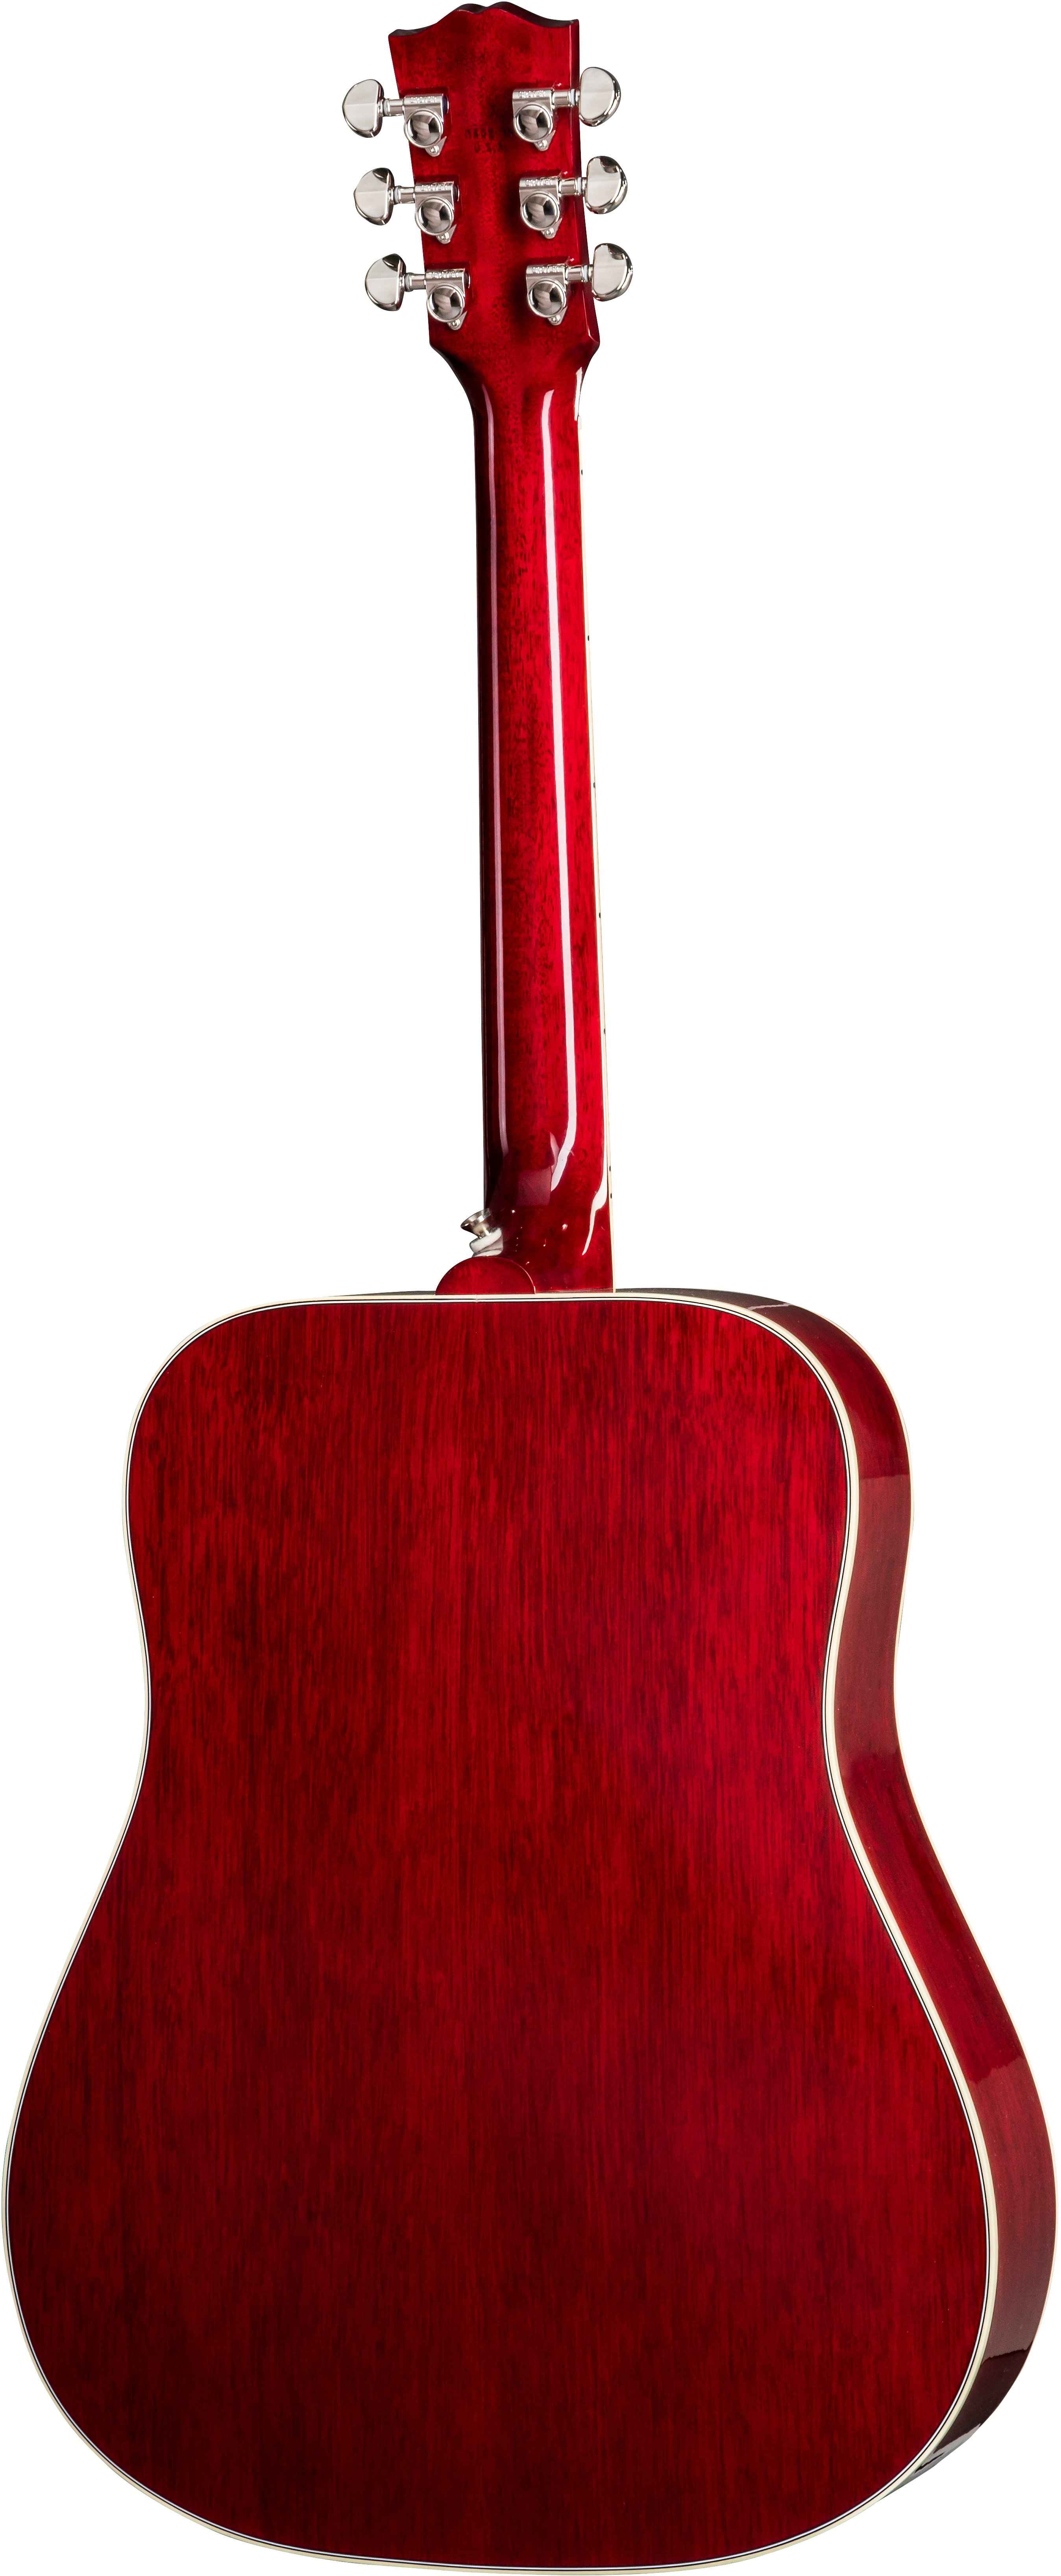 Gibson Hummingbird 2019 Dreadnought Epicea Acajou Rw - Vintage Cherry Sunburst - Acoustic guitar & electro - Variation 1